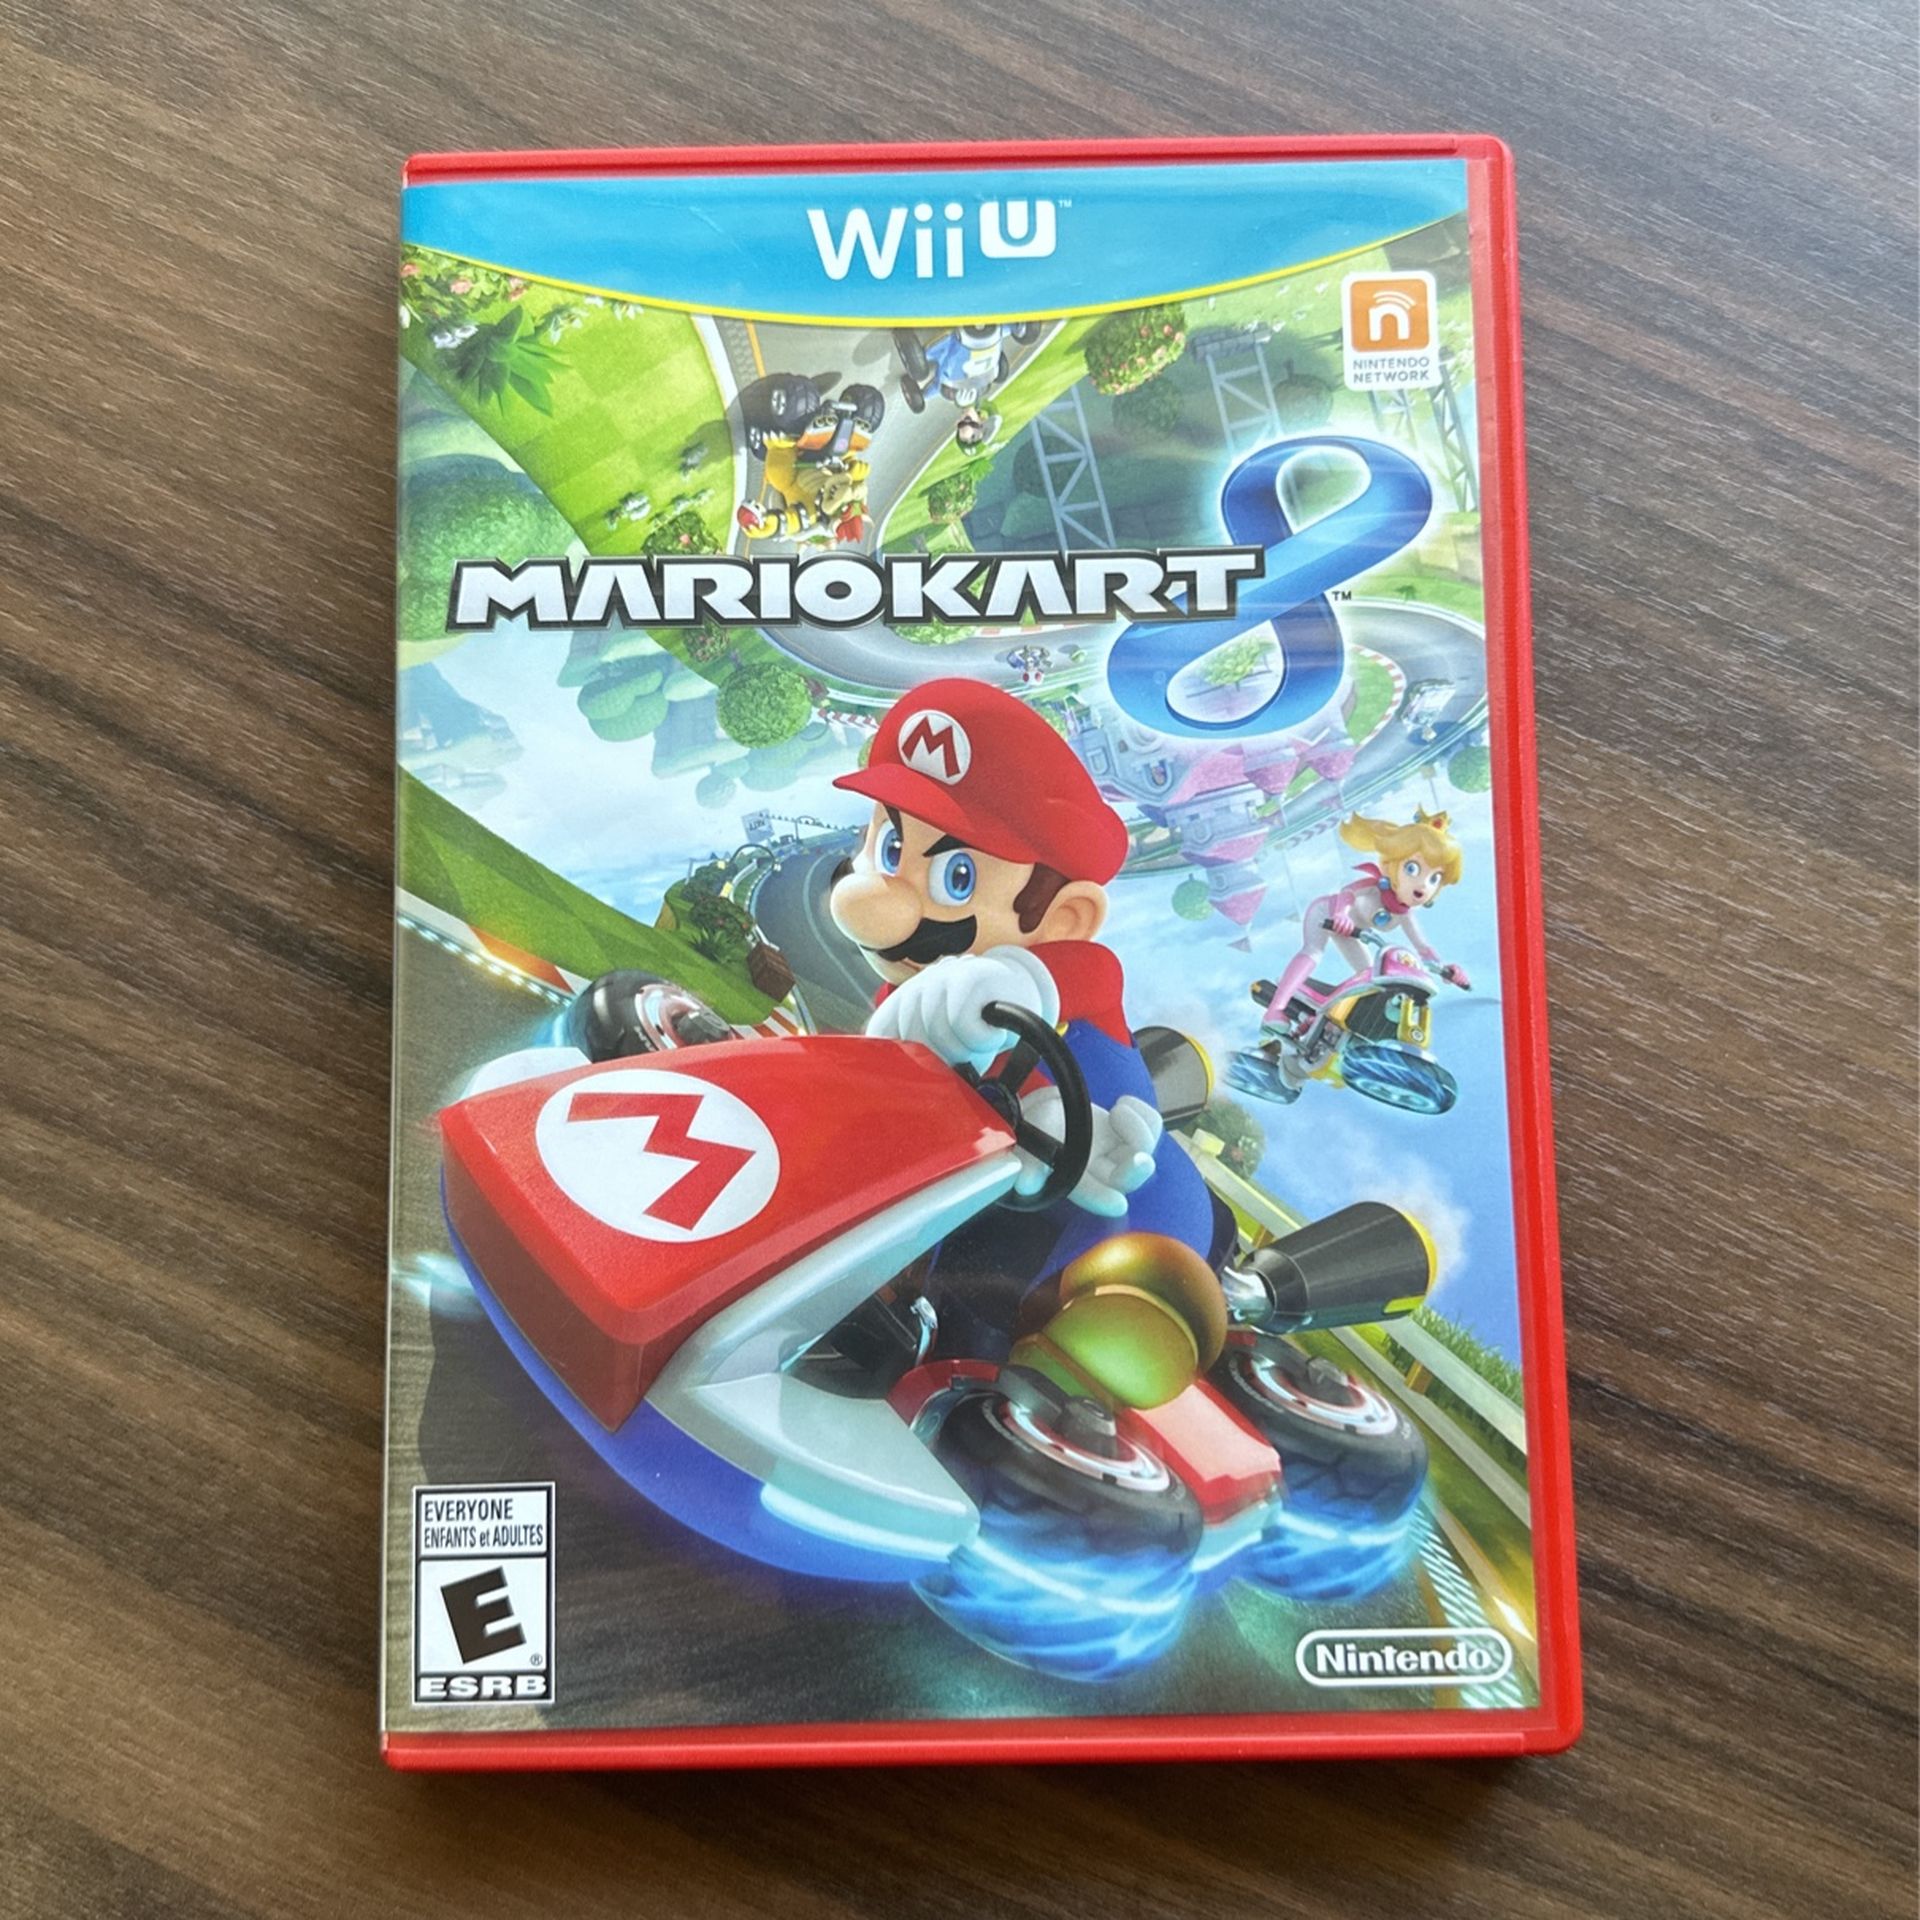 Mario kart 8 - WiiU